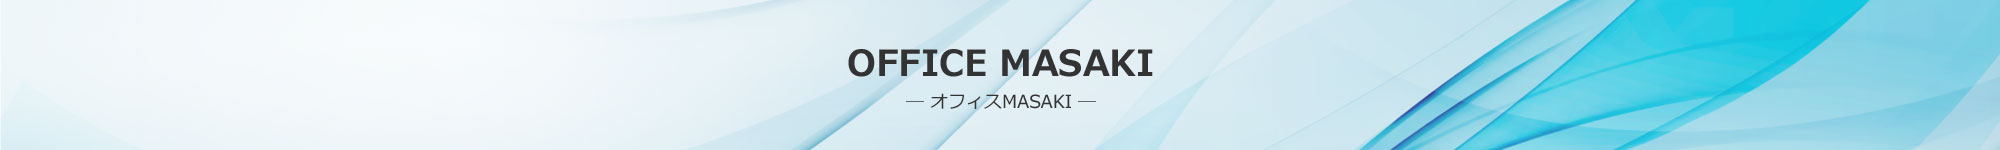 OFFICE MASAKI